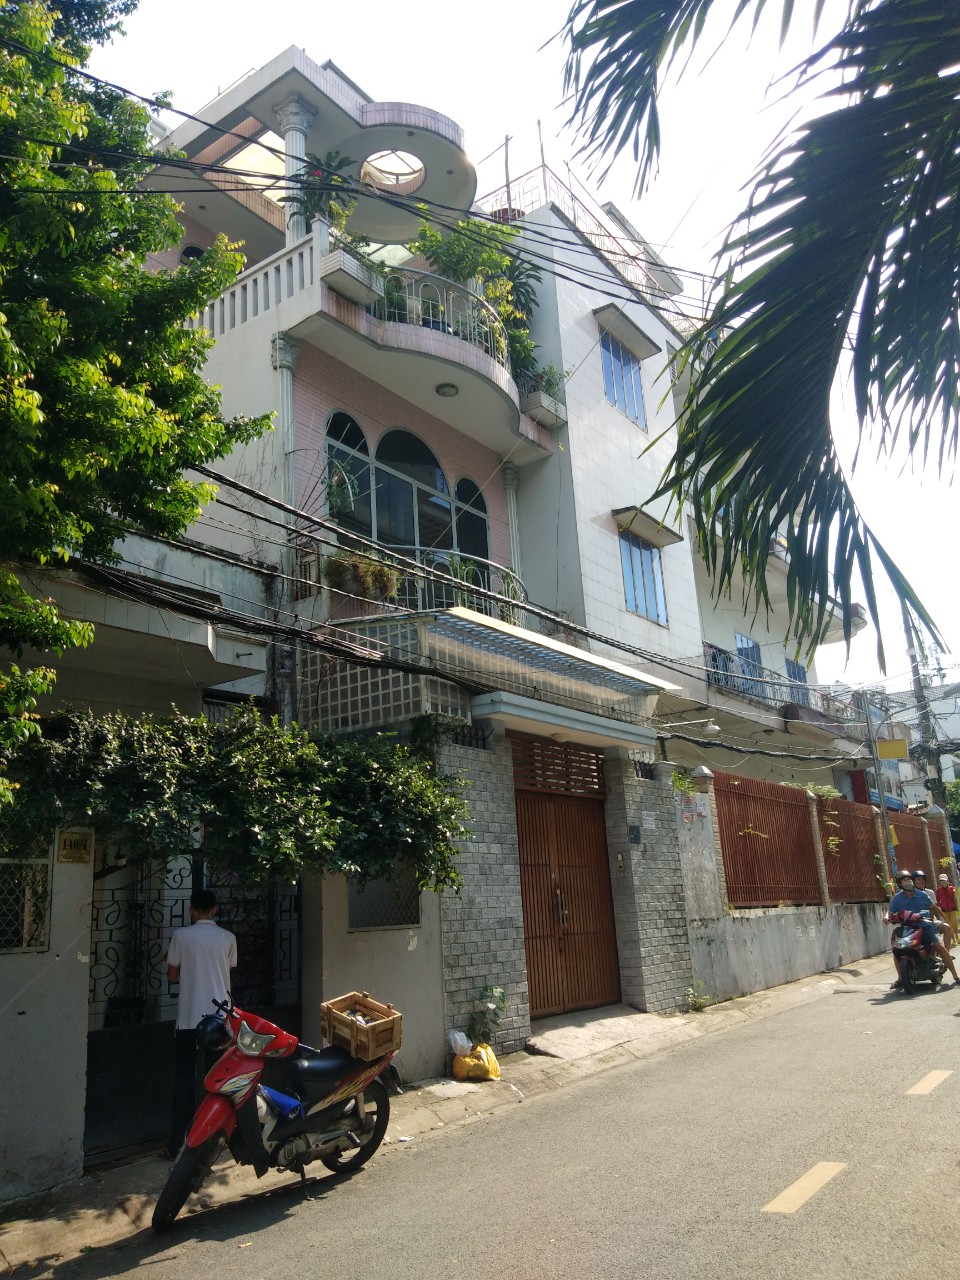 Bán nhà mới 4,5 x 18 3 lầu ST, đường Lê Thị Riêng, 500m UBND Q12, tiện kinh doanh, giá 4,6ty. LH 0909 174 916 